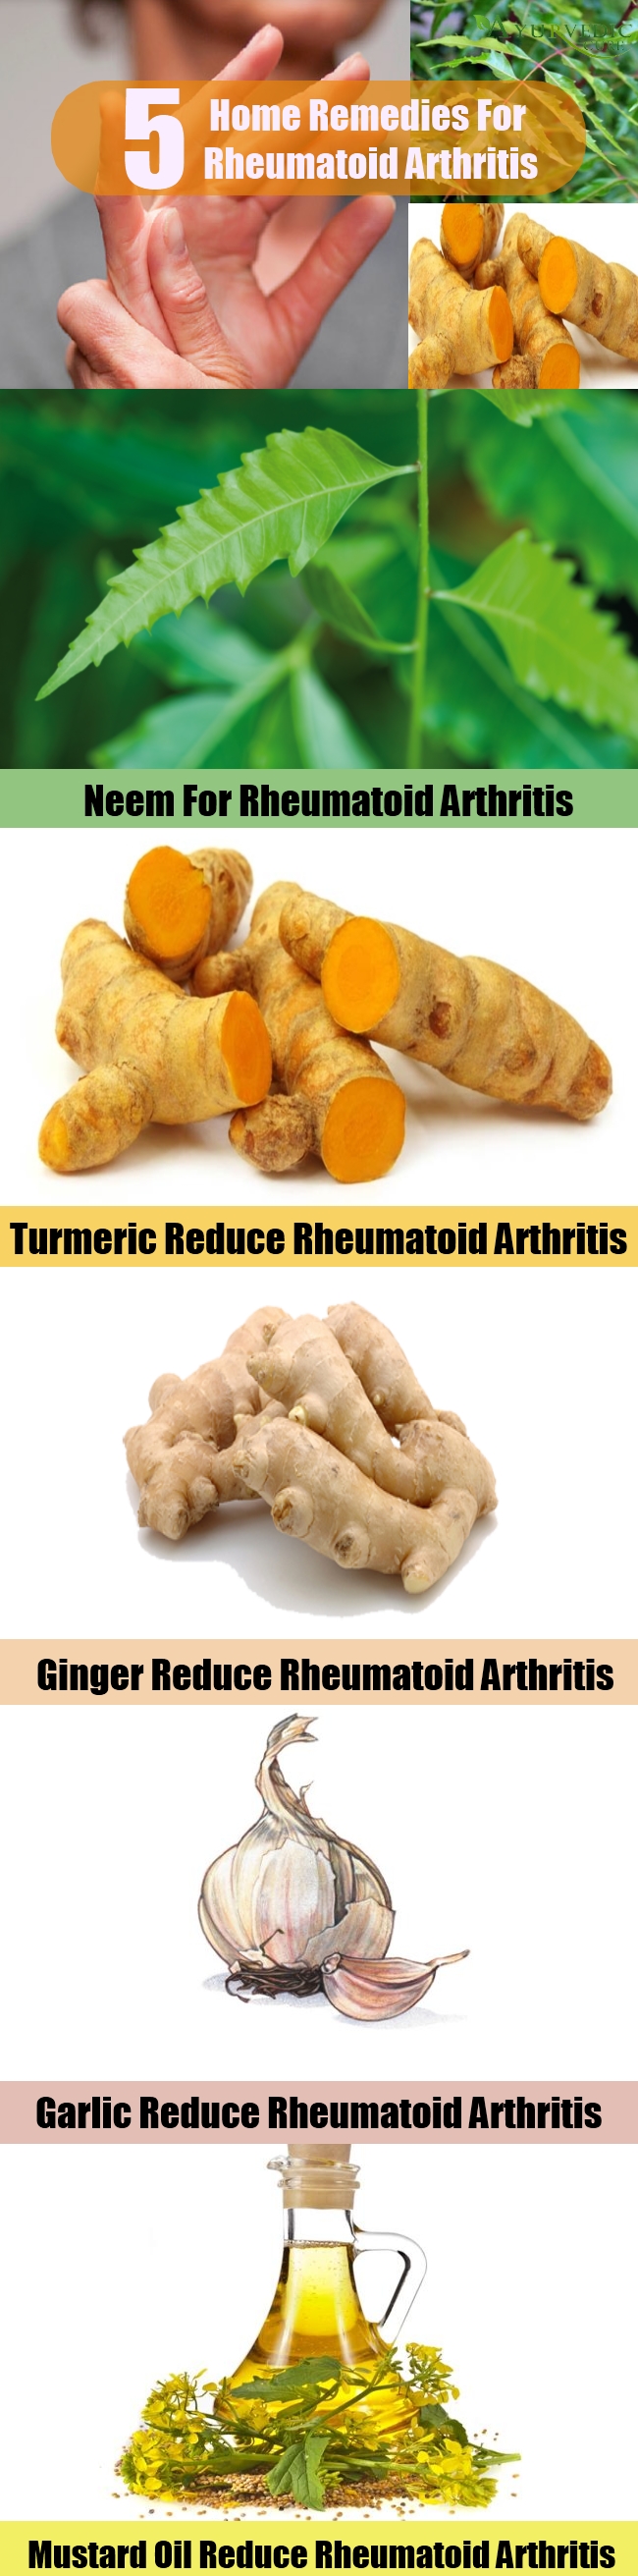 Top 5 Home Remedies For Rheumatoid Arthritis